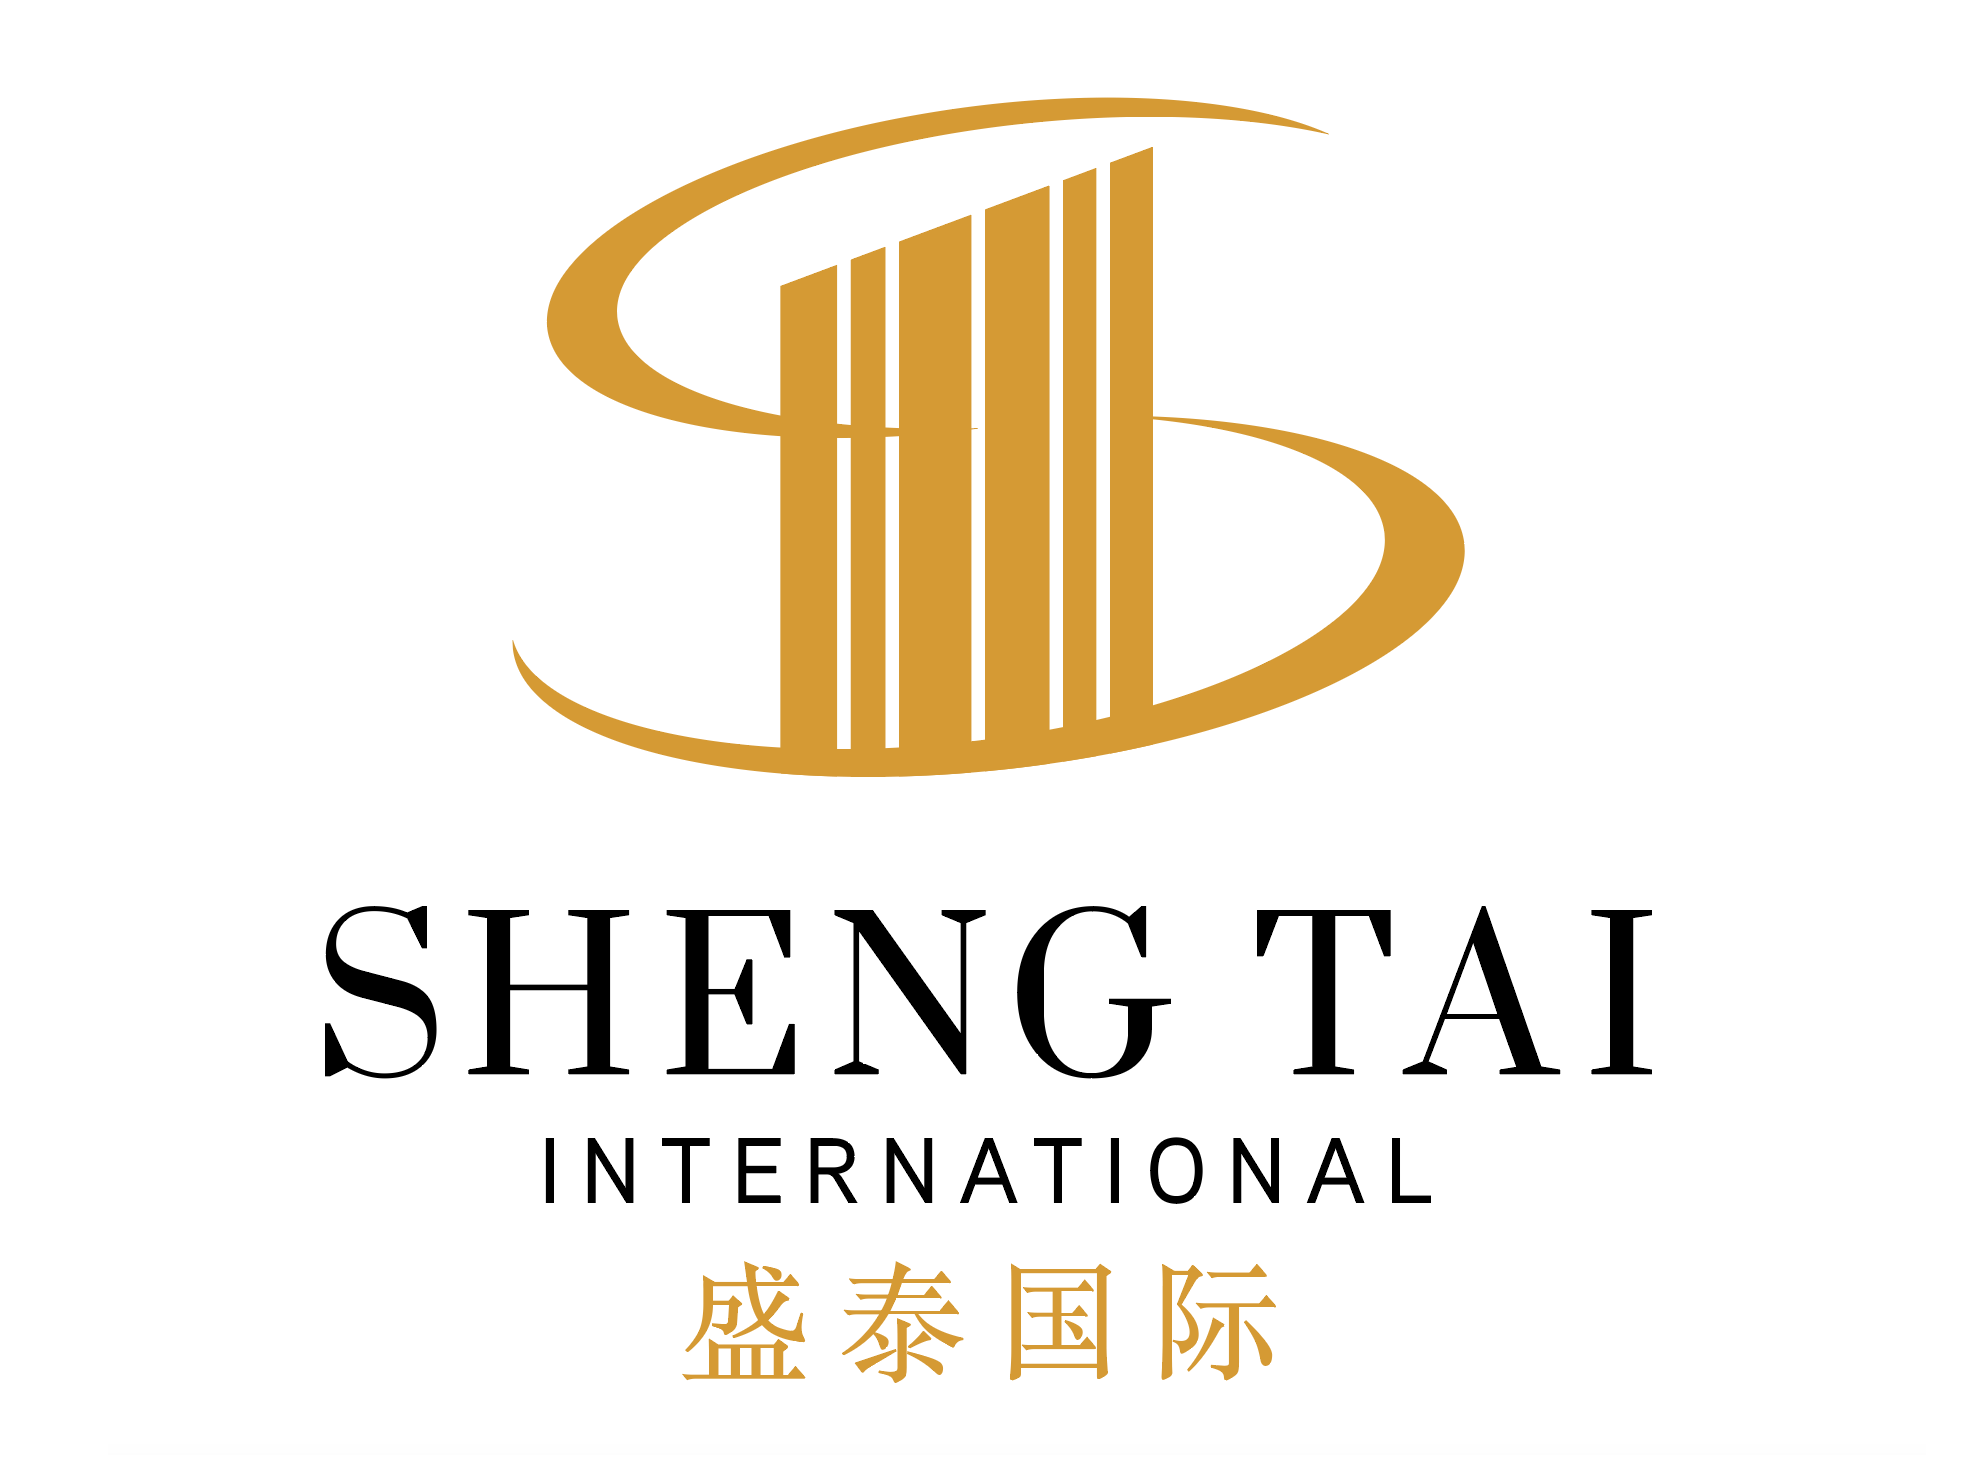 Sheng Tai International　世界規模の企業を目指す、不動産や農場を中心とした投資商品を扱うマレーシア有数の会社